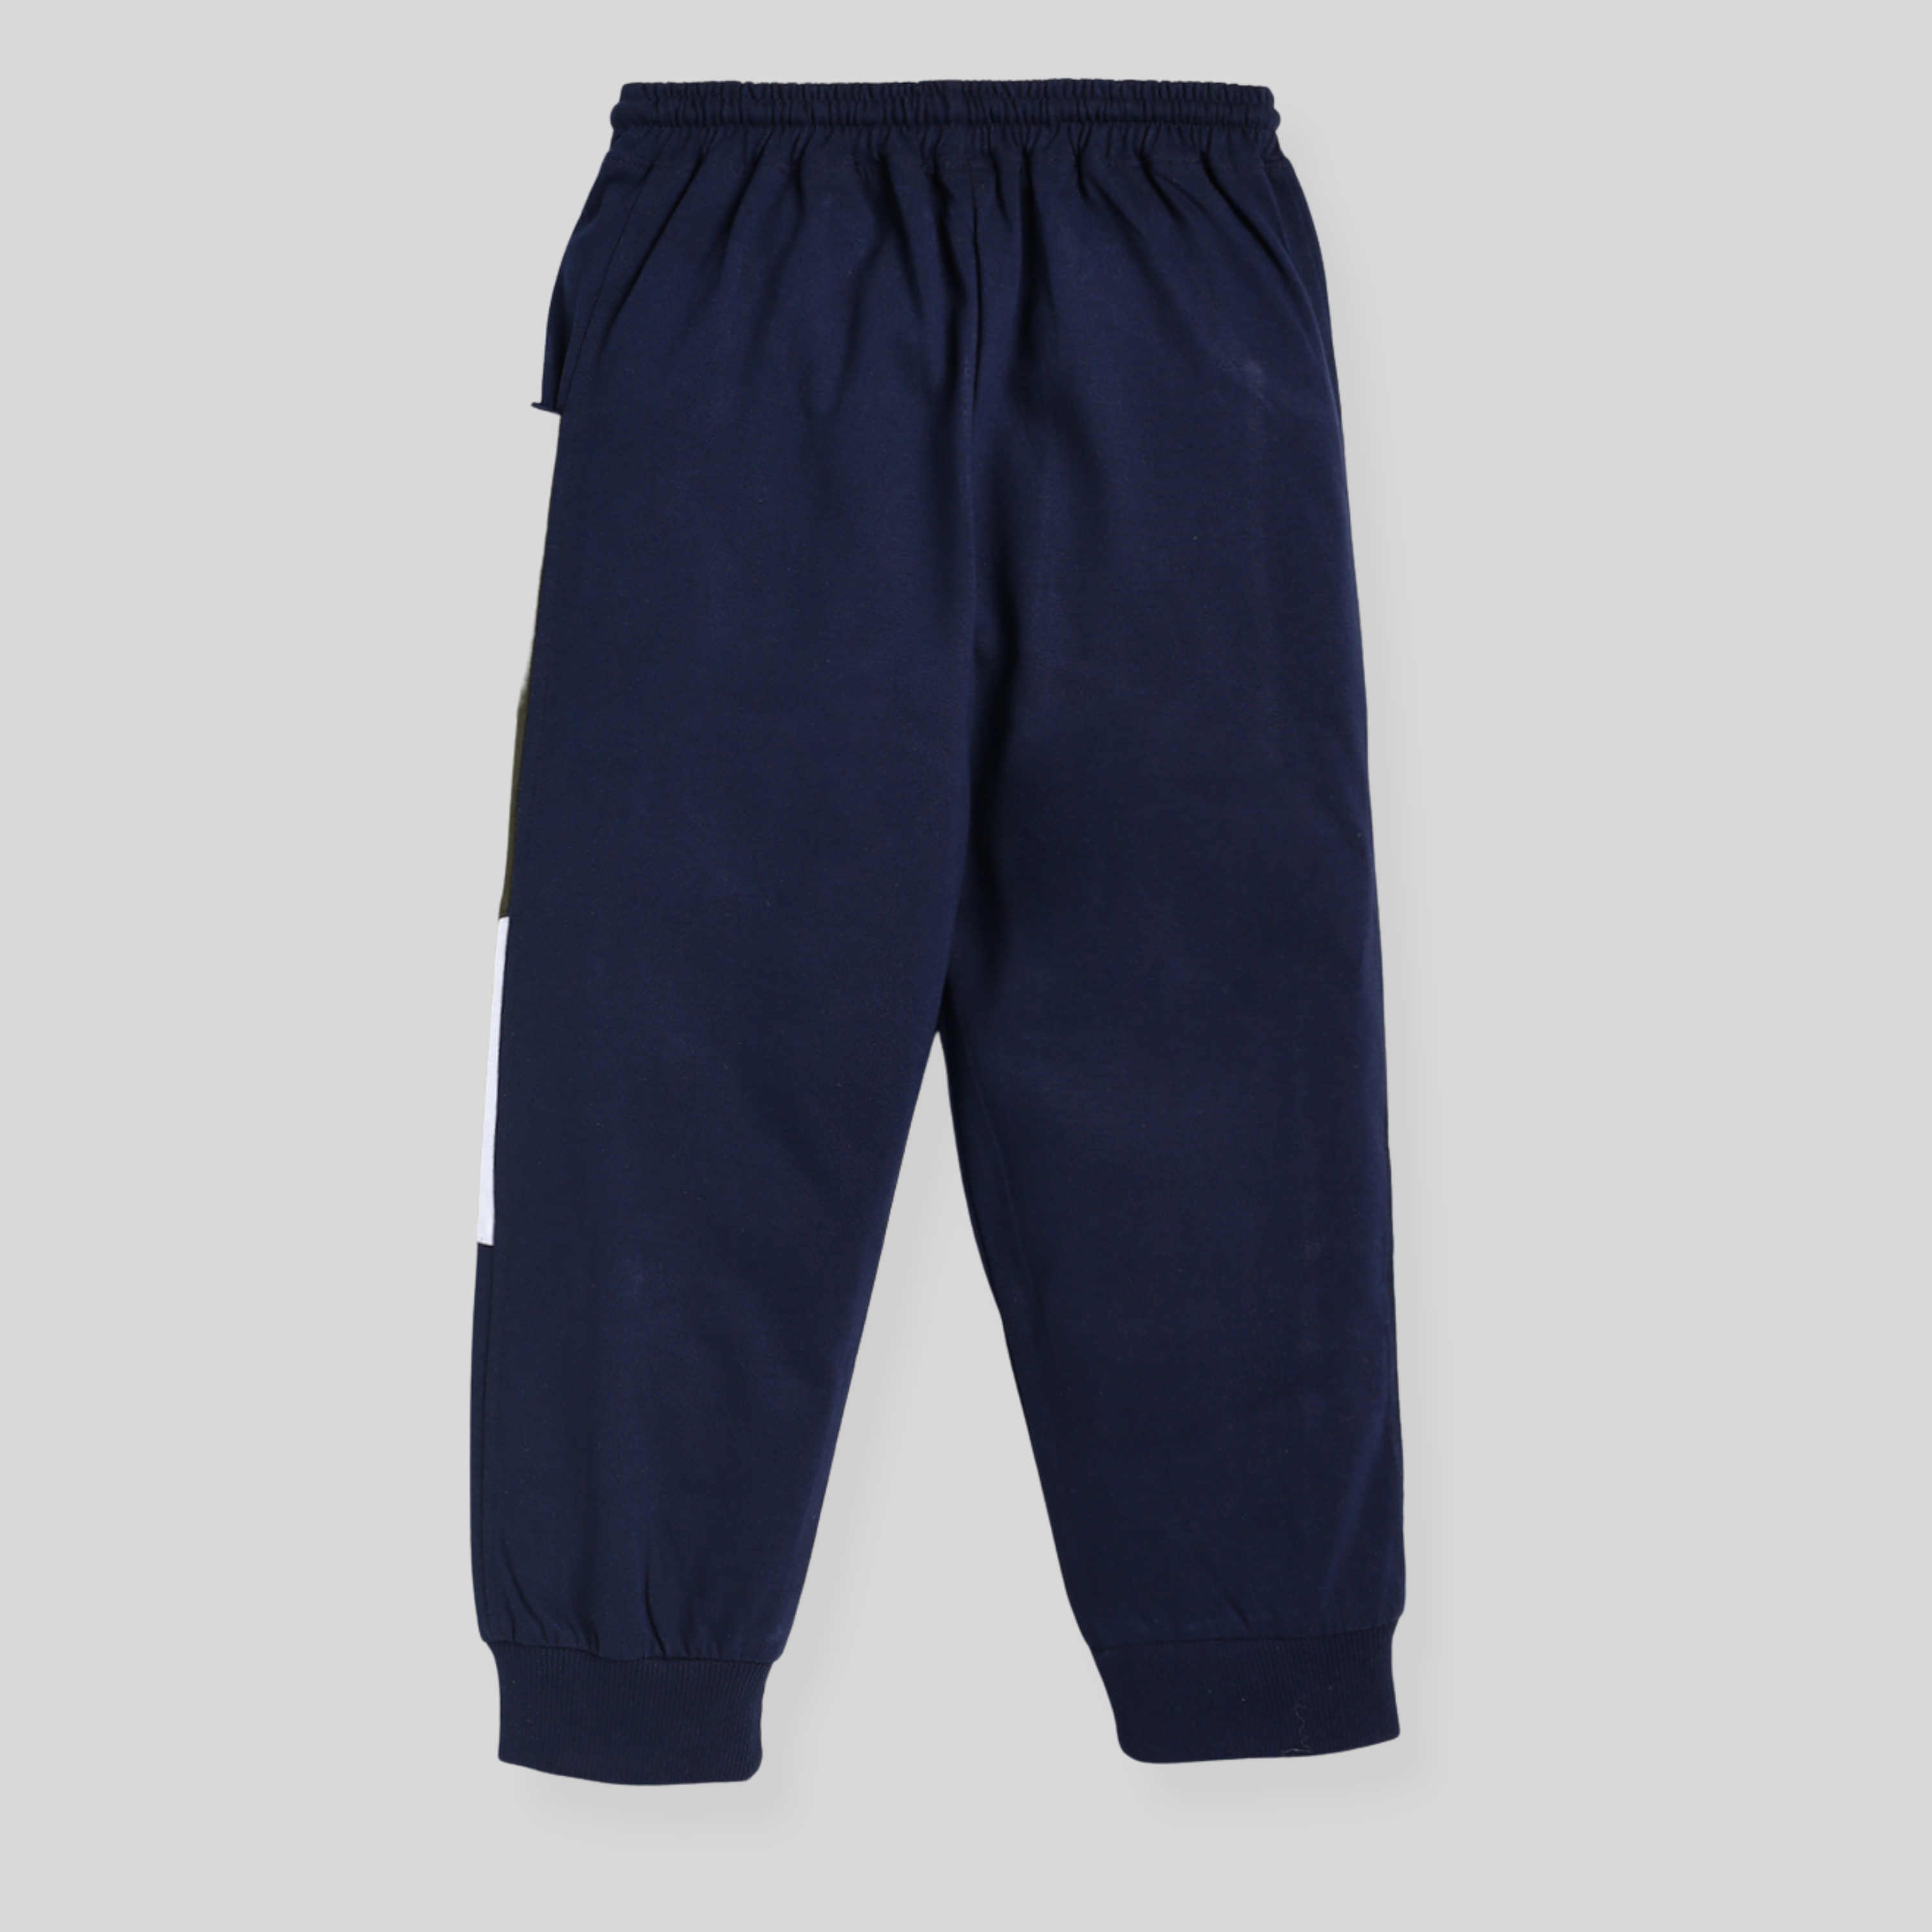 Full length pyjama for boys - Navy